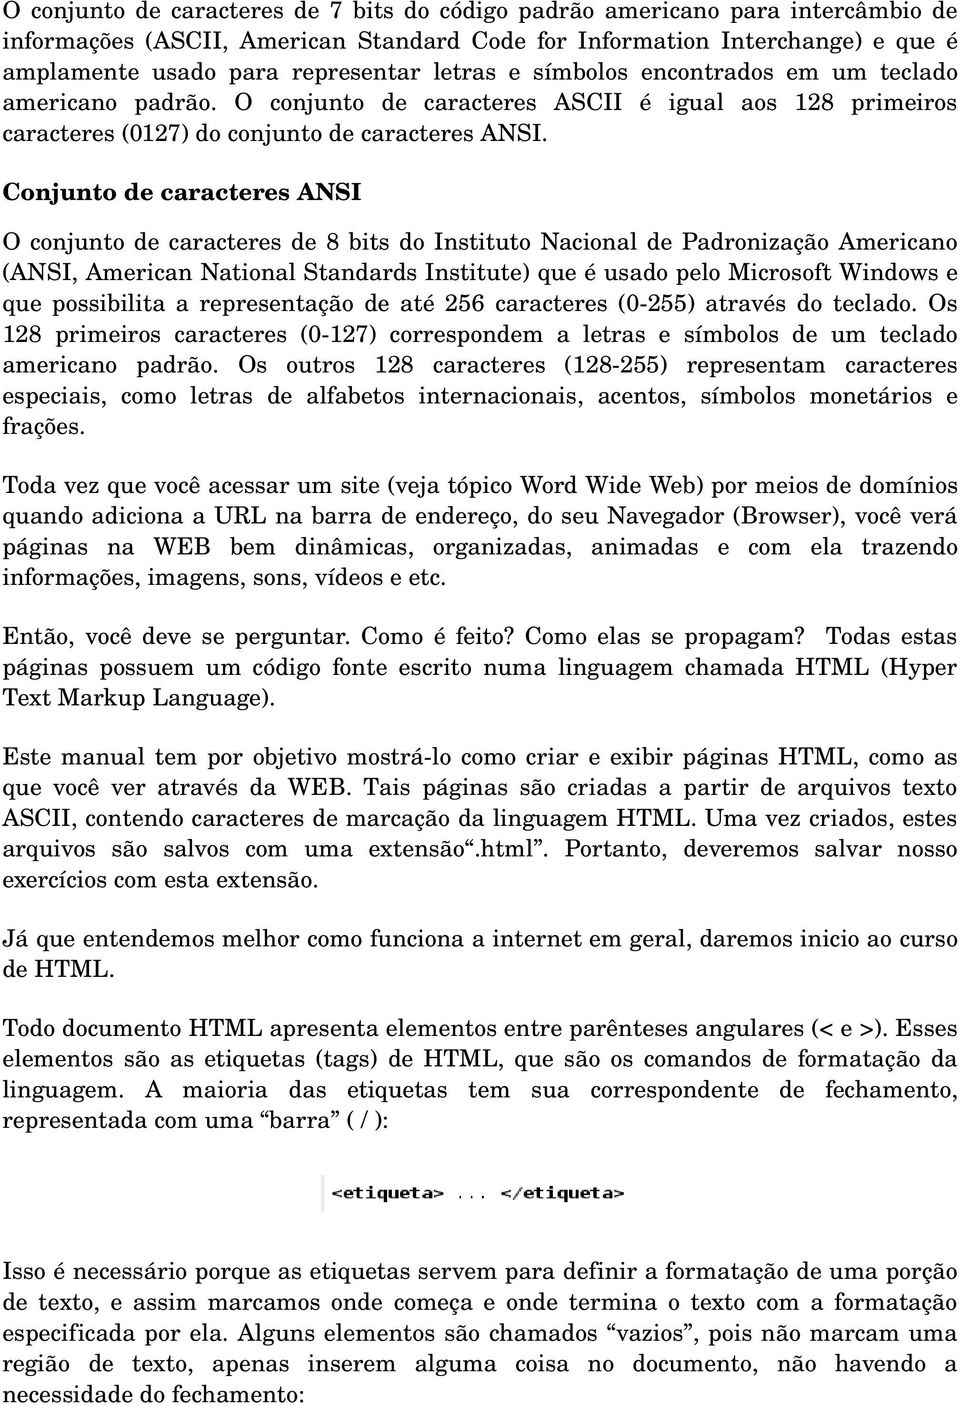 Conjunto de caracteres ANSI O conjunto de caracteres de 8 bits do Instituto Nacional de Padronização Americano (ANSI, American National Standards Institute) que é usado pelo Microsoft Windows e que